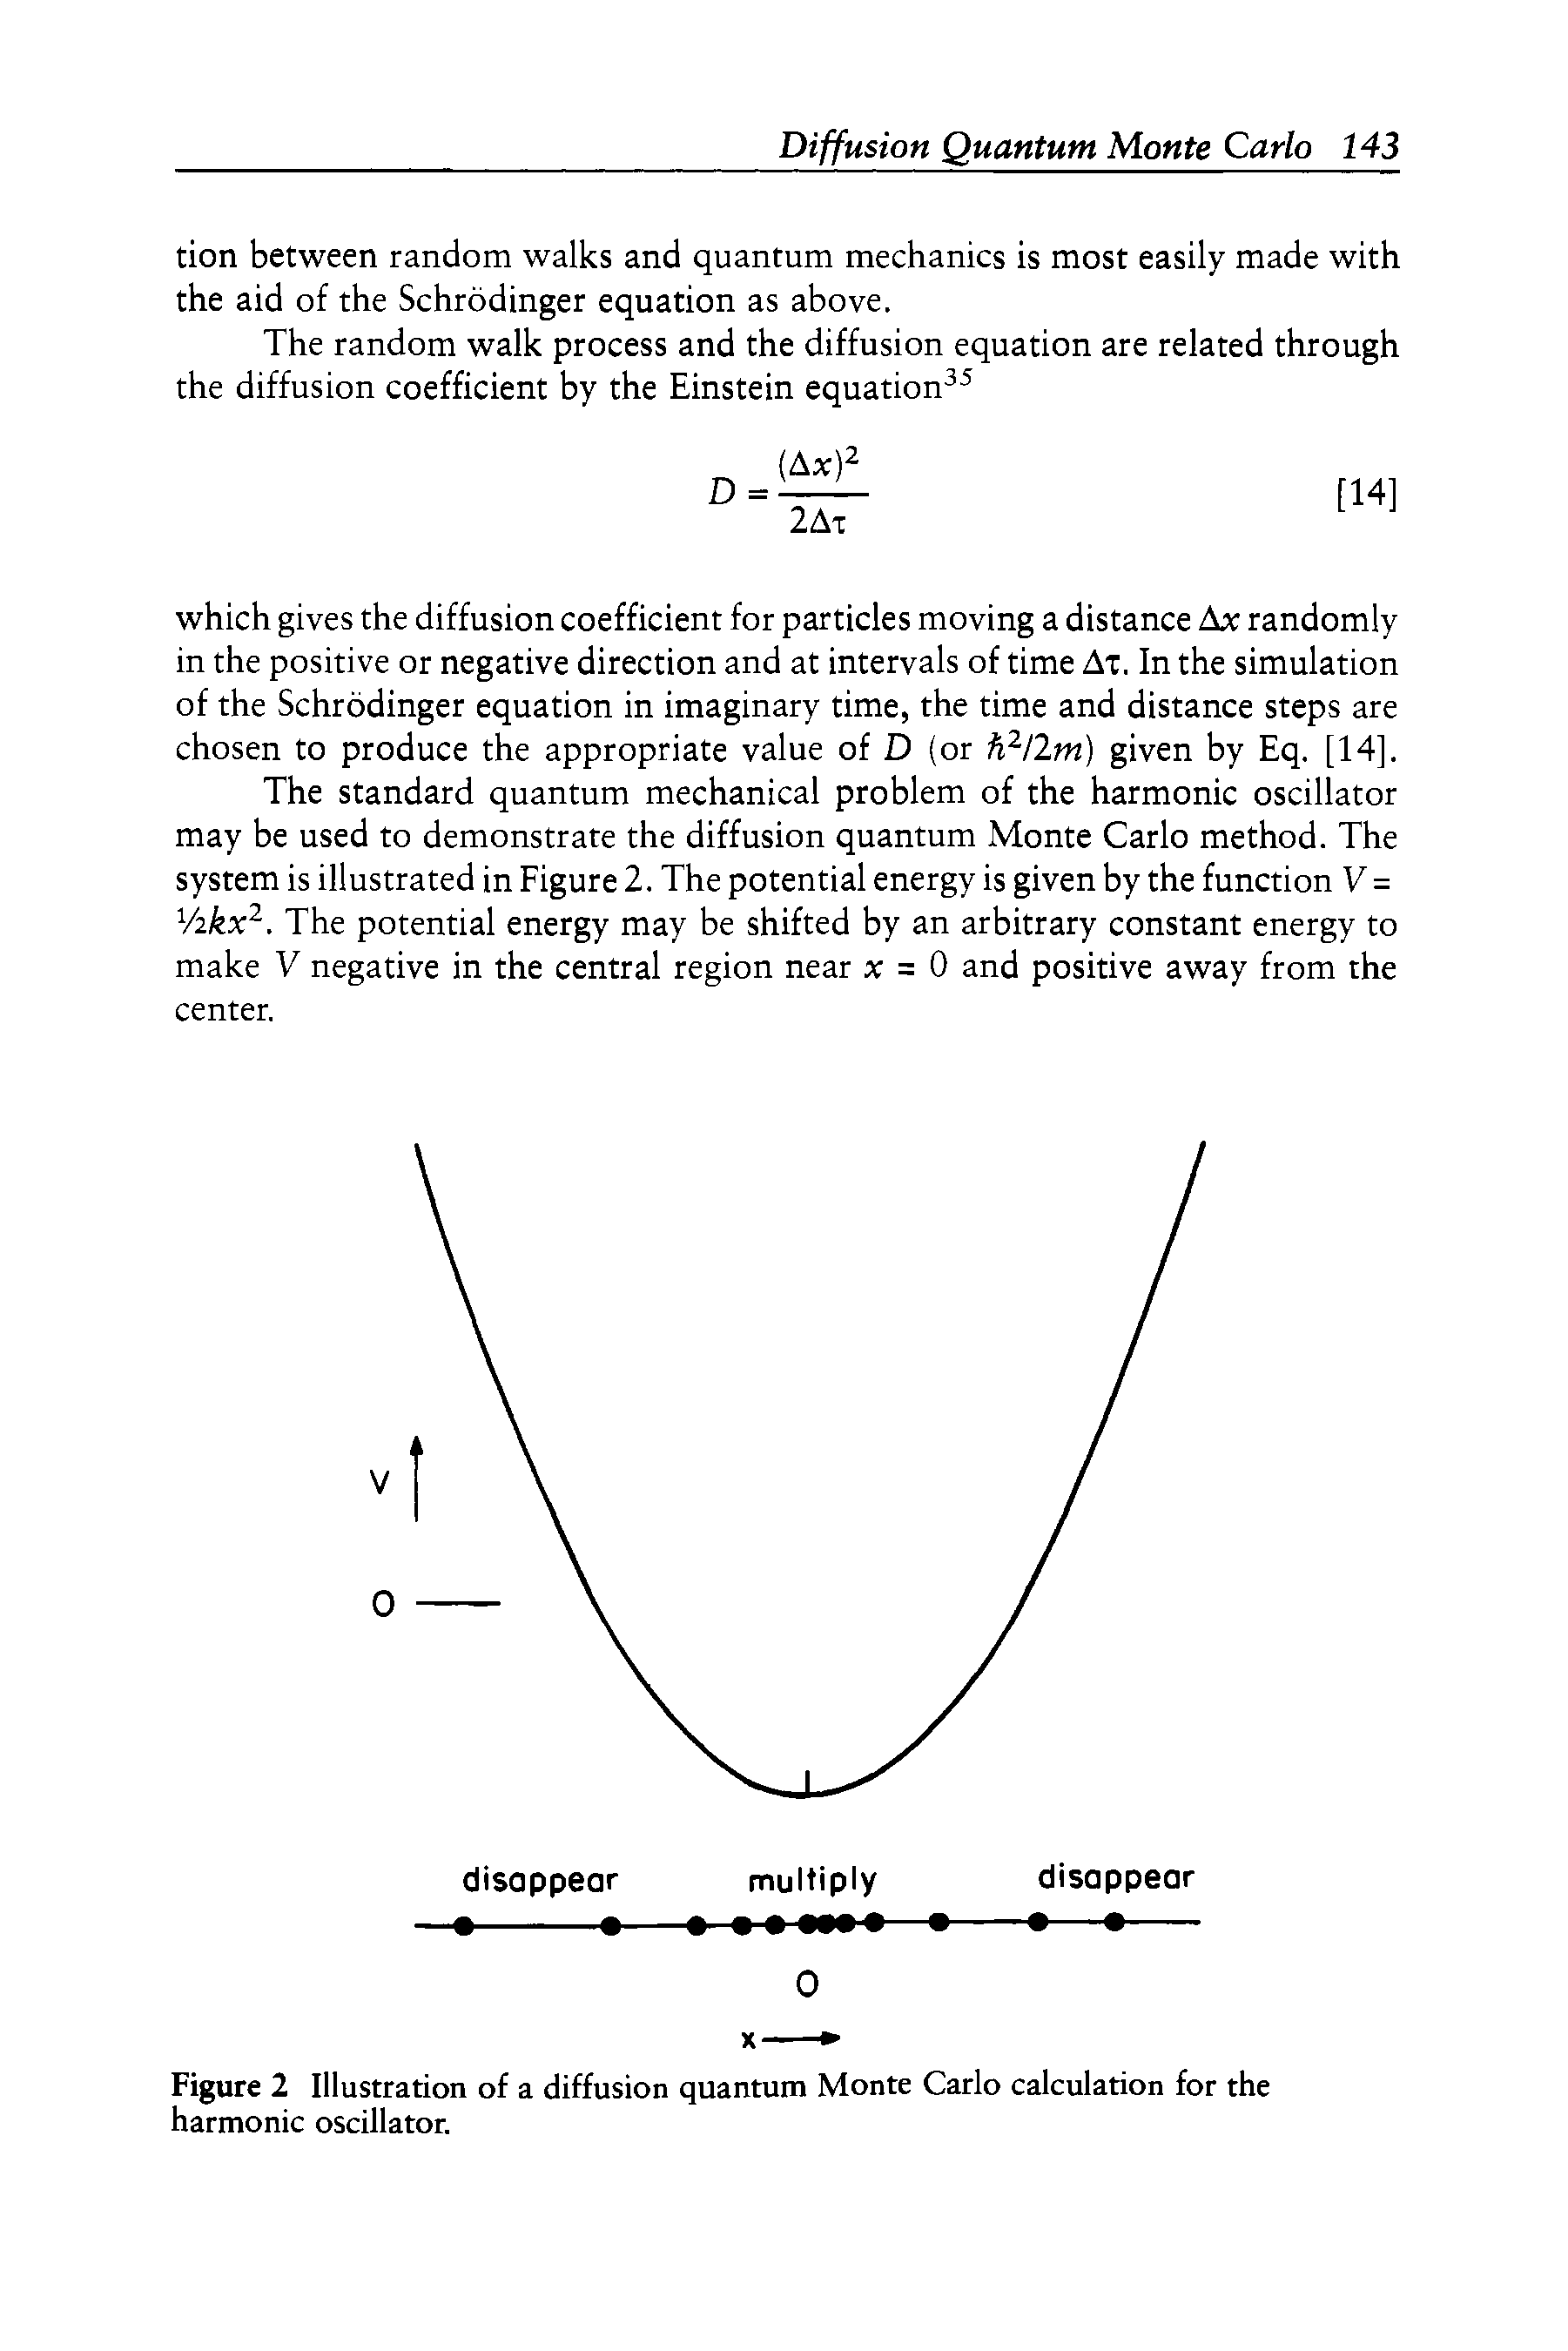 Figure 2 Illustration of a diffusion quantum Monte Carlo calculation for the harmonic oscillator.